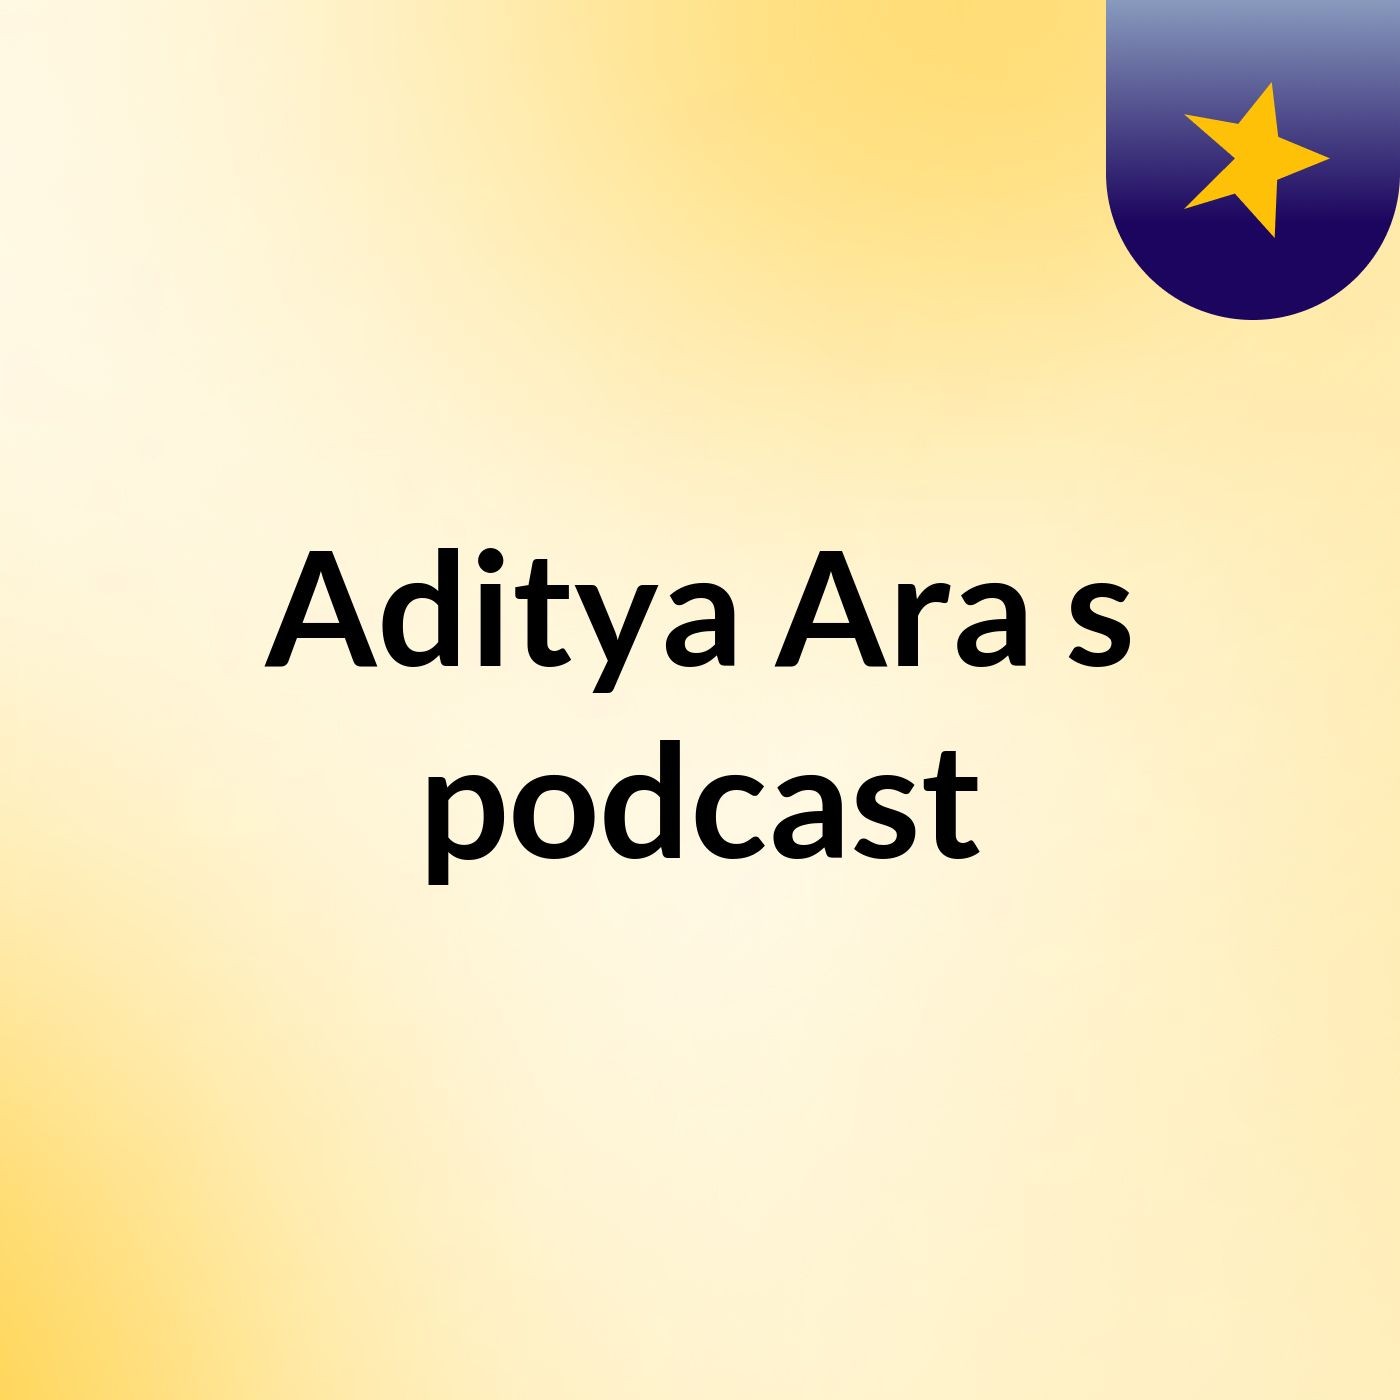 कहानियाँ के तहत आज राजधानी एक्सप्रेस जा चुकी है का कहानी कोहरे की रातEpisode 2 - Aditya Ara's podcast